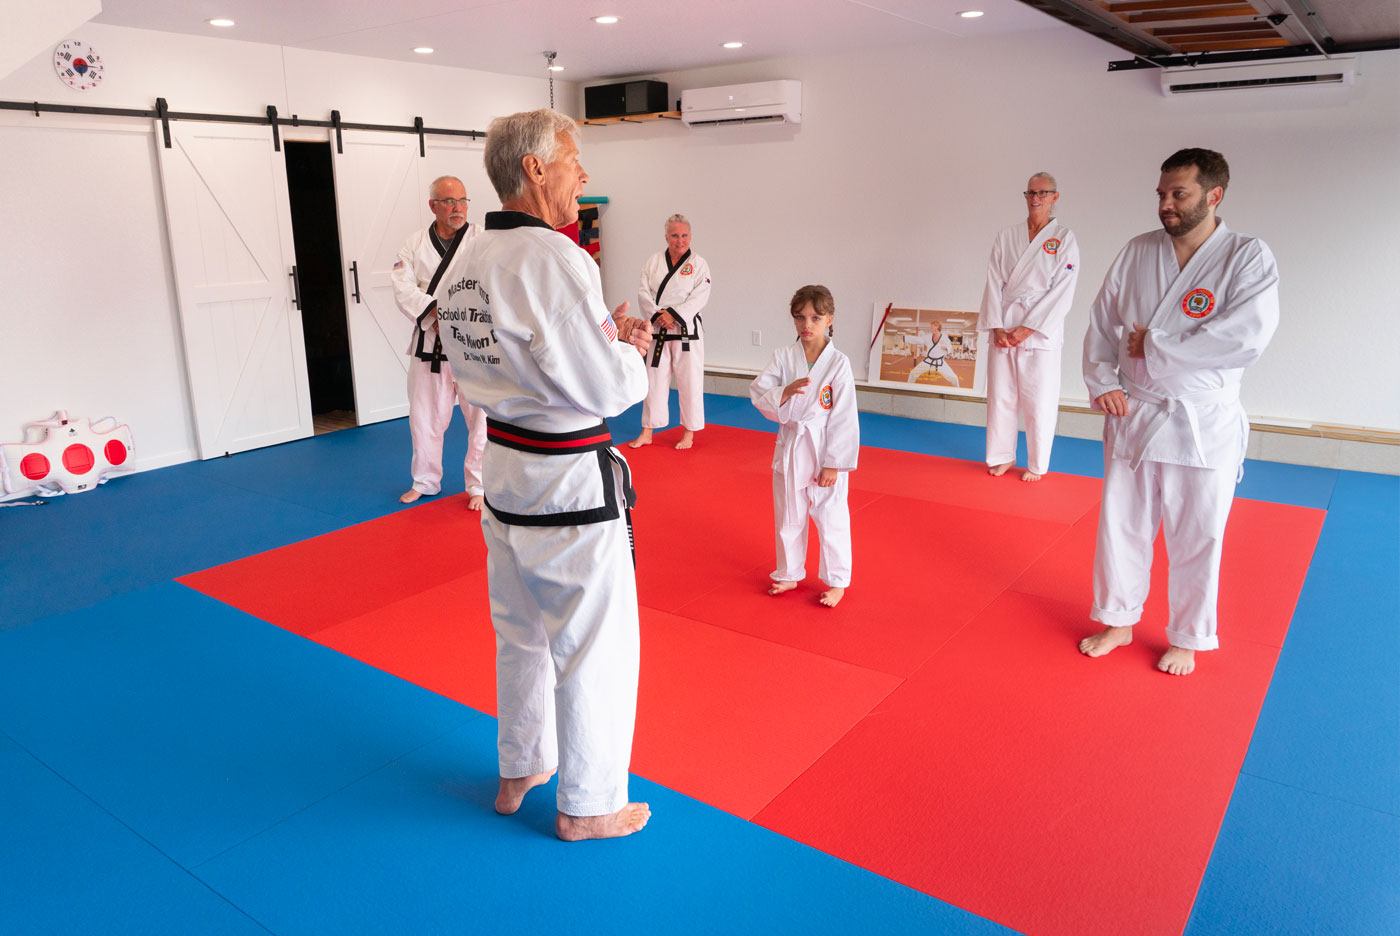 Charles Confar: Teaching tae kwon do